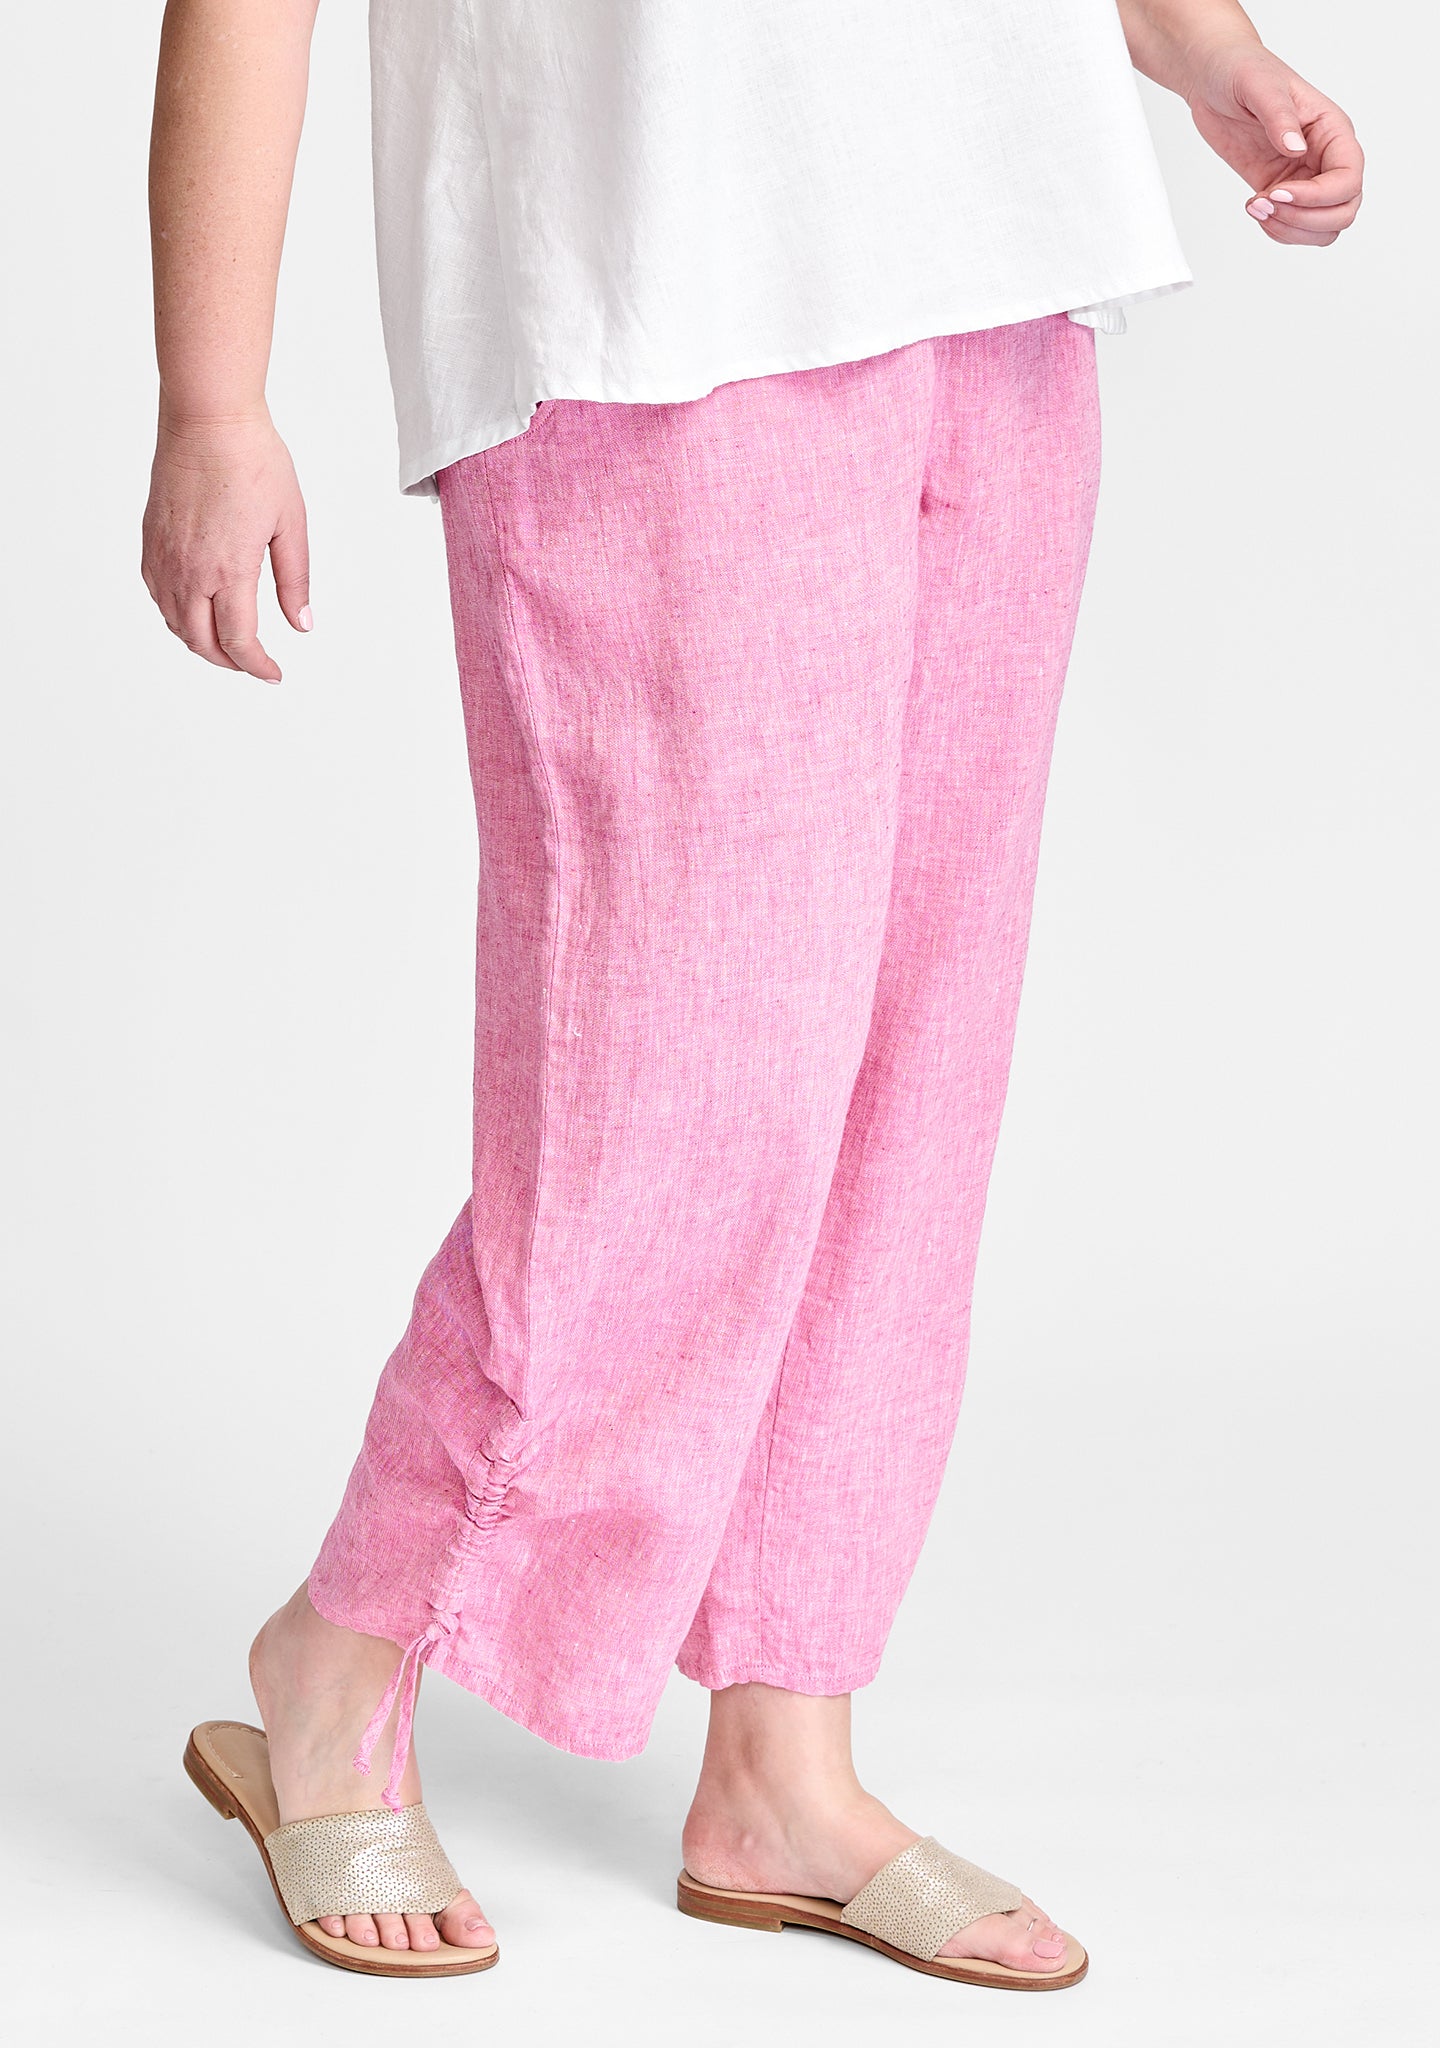 zen pant linen pants with elastic waist pink